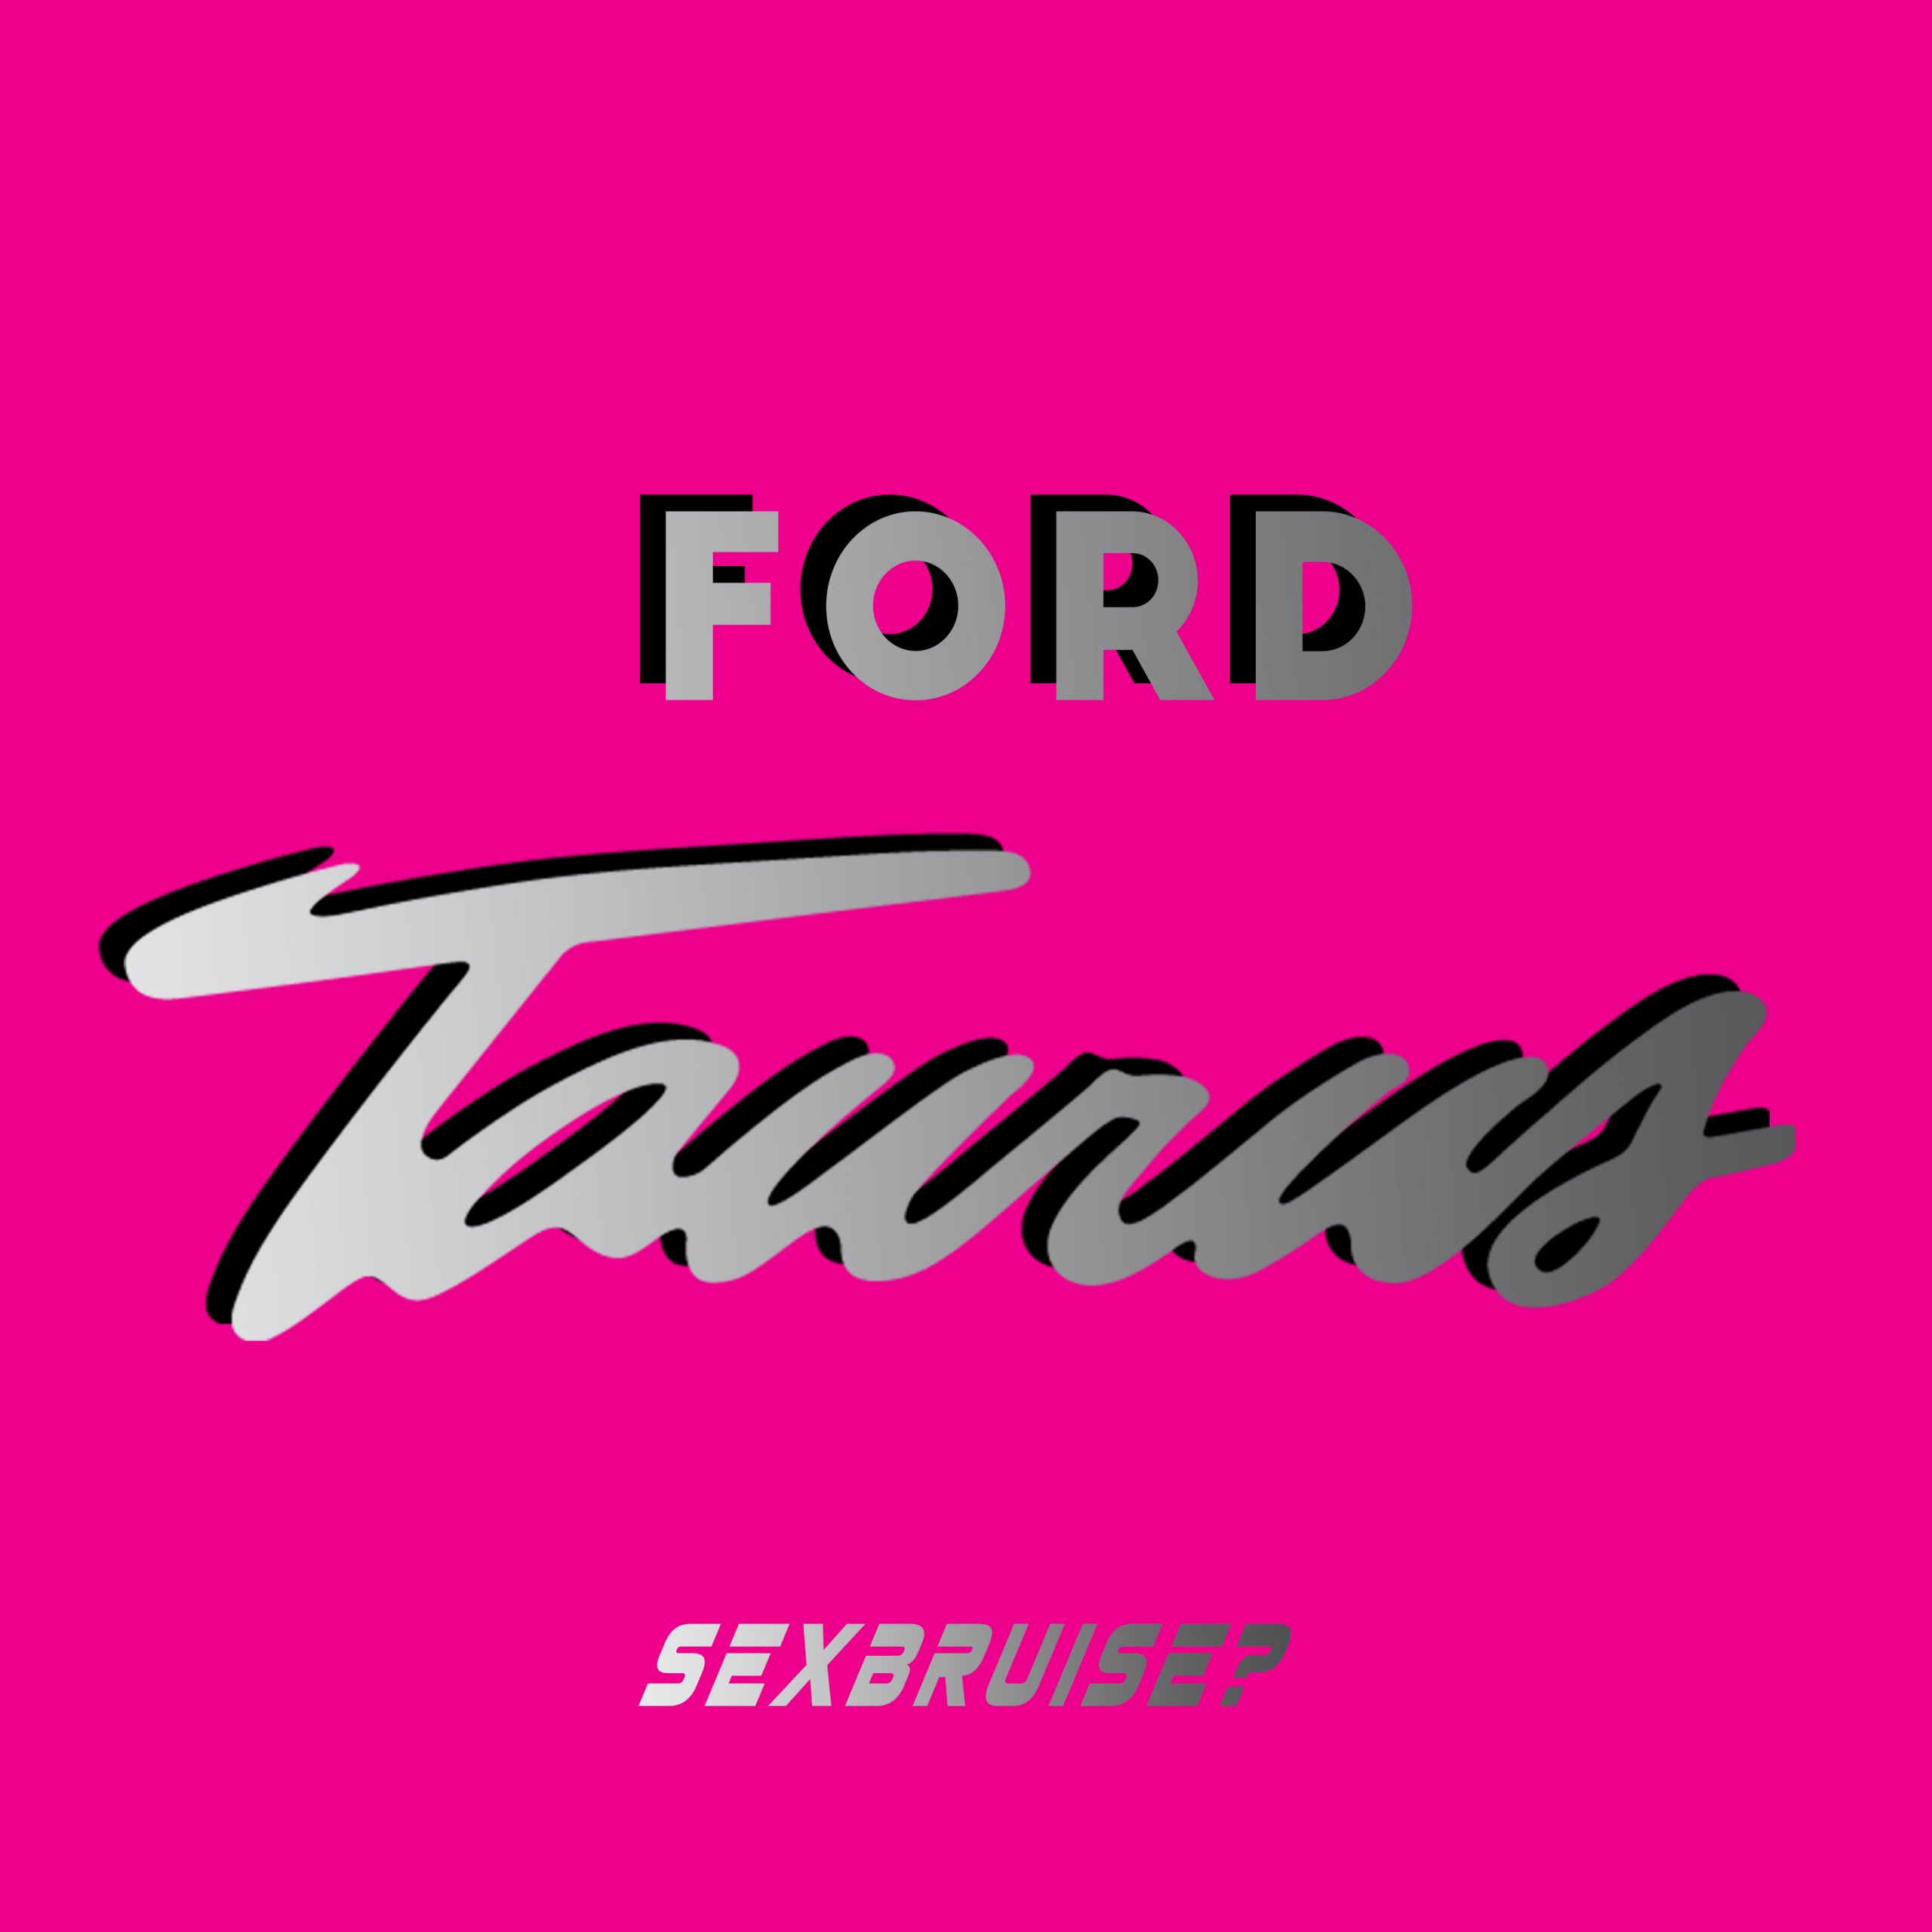 Ford Taurus Album Art